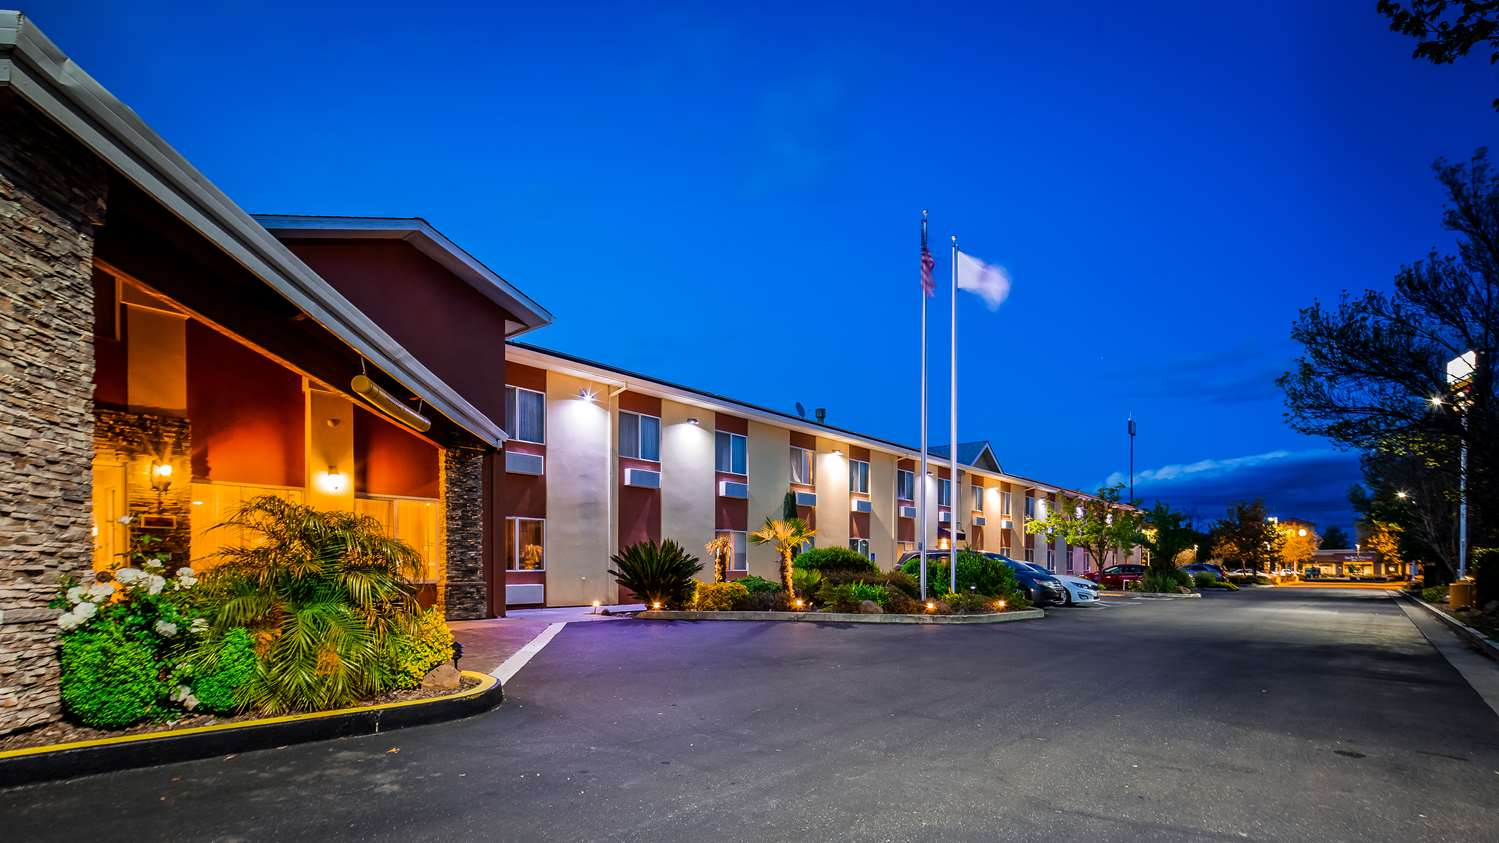  Best Western Plus Corning Inn Hotels In Corning CA